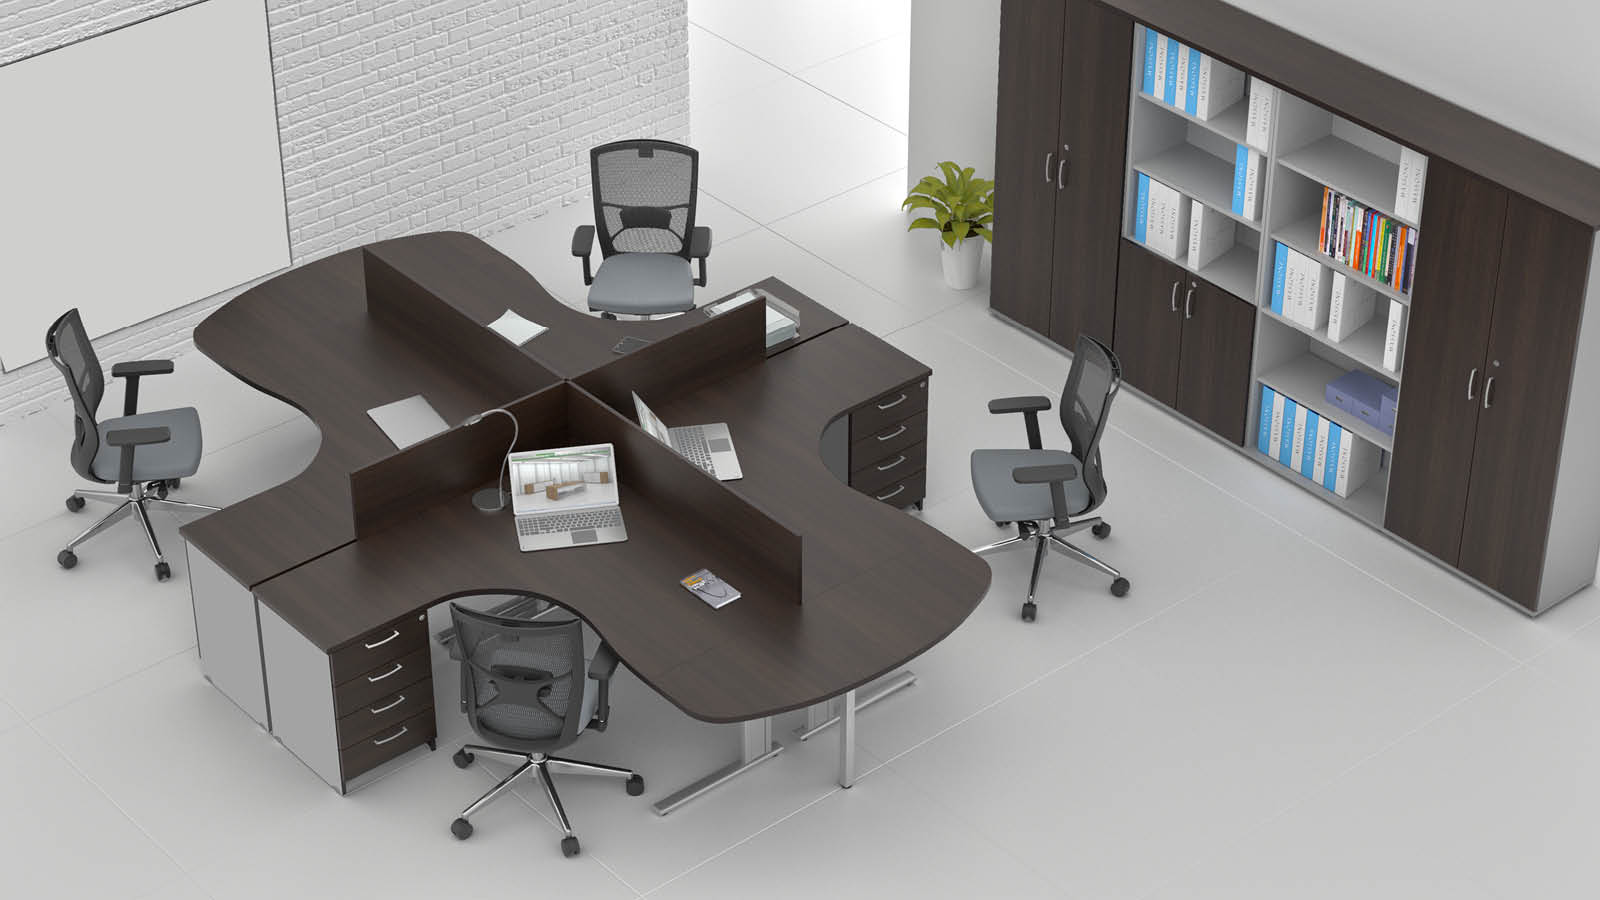 Stanowisko pracy biurowej - biurka z panelami dzielącymi, na stelażu, krzesła biurowe, szafy na akta (kolor: wenge/popiel).